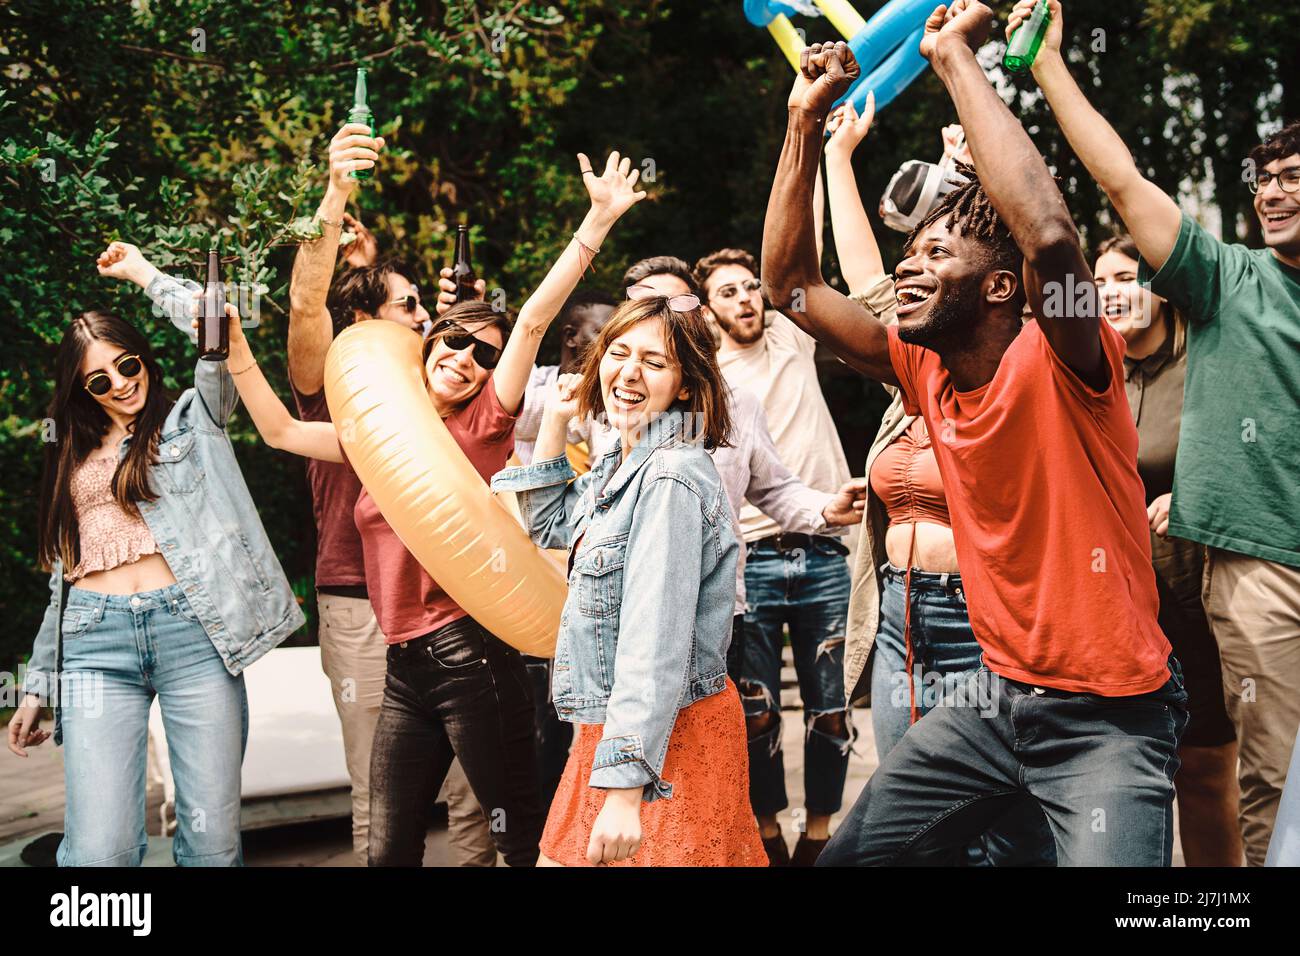 Vielfältige und verspielte Gruppe von jungen Menschen tanzen und Geselligkeit zusammen am Tag Gartenparty - Multigenerational freudige Familie genießen ihr ho Stockfoto